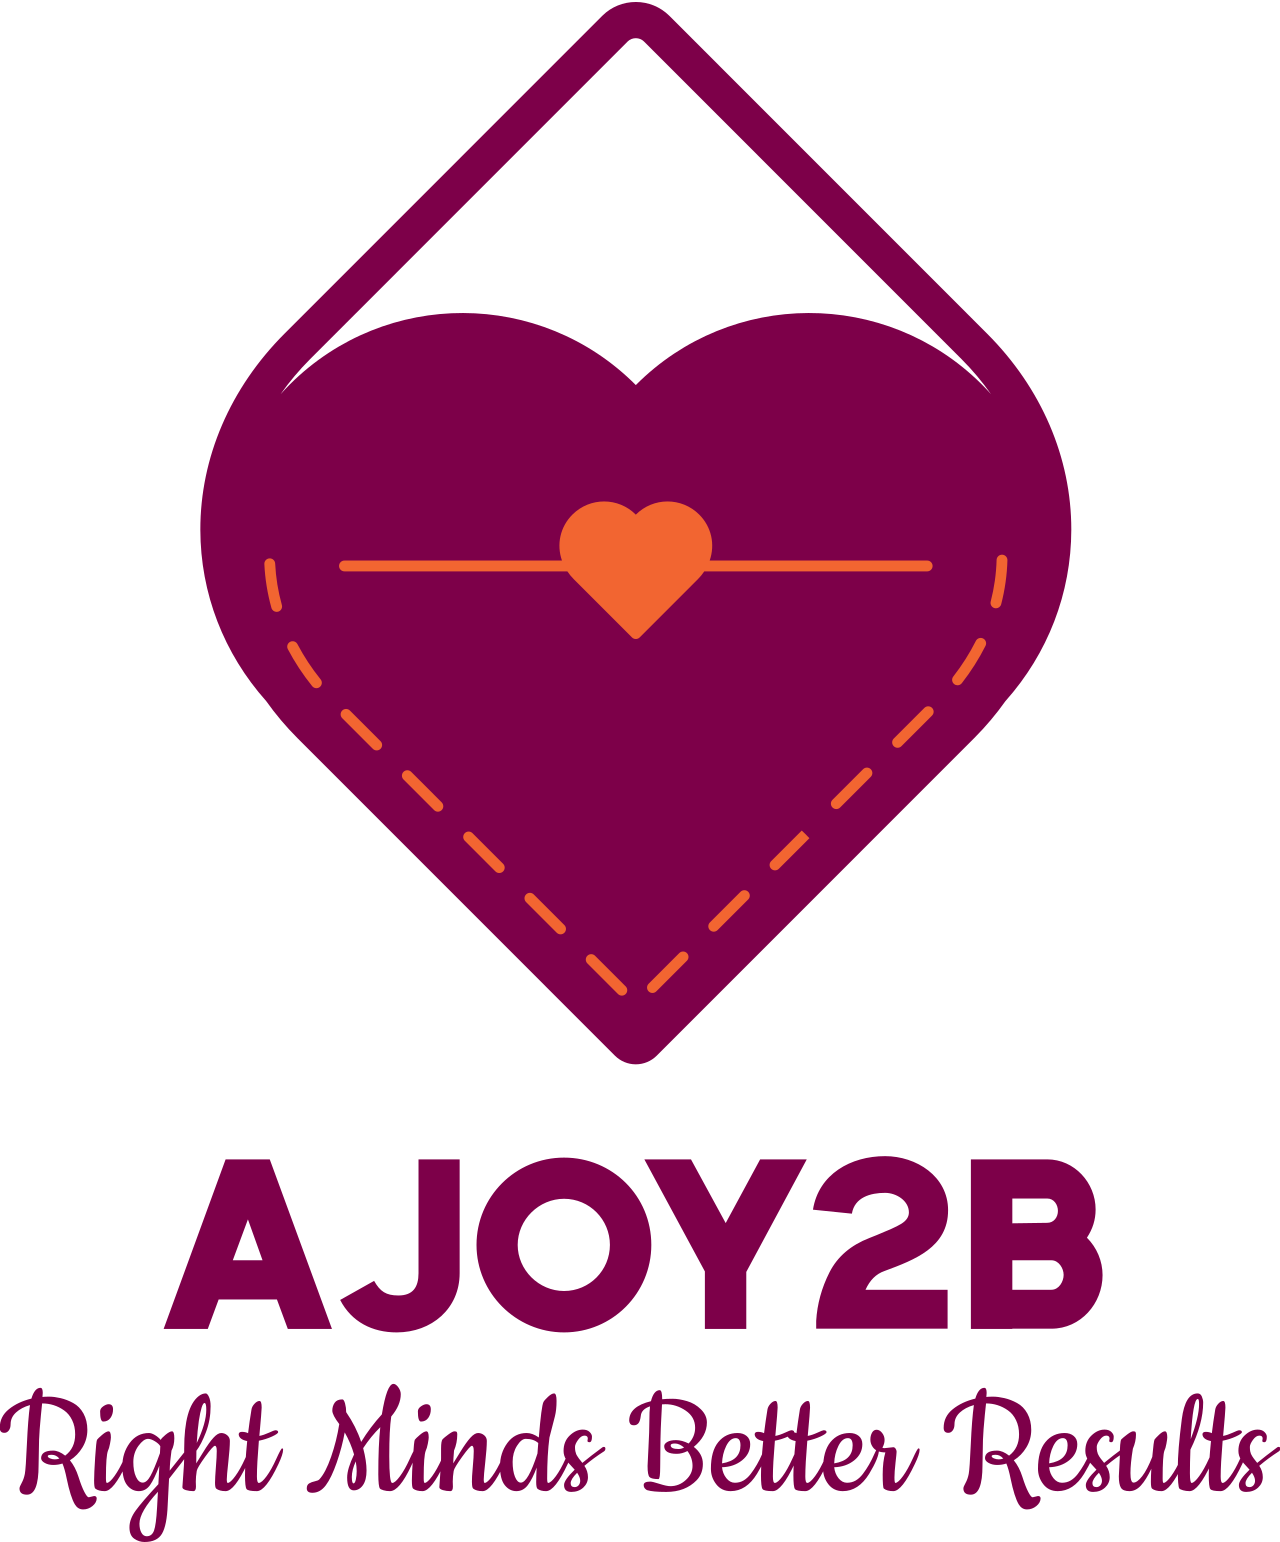 AJOY2B's logo